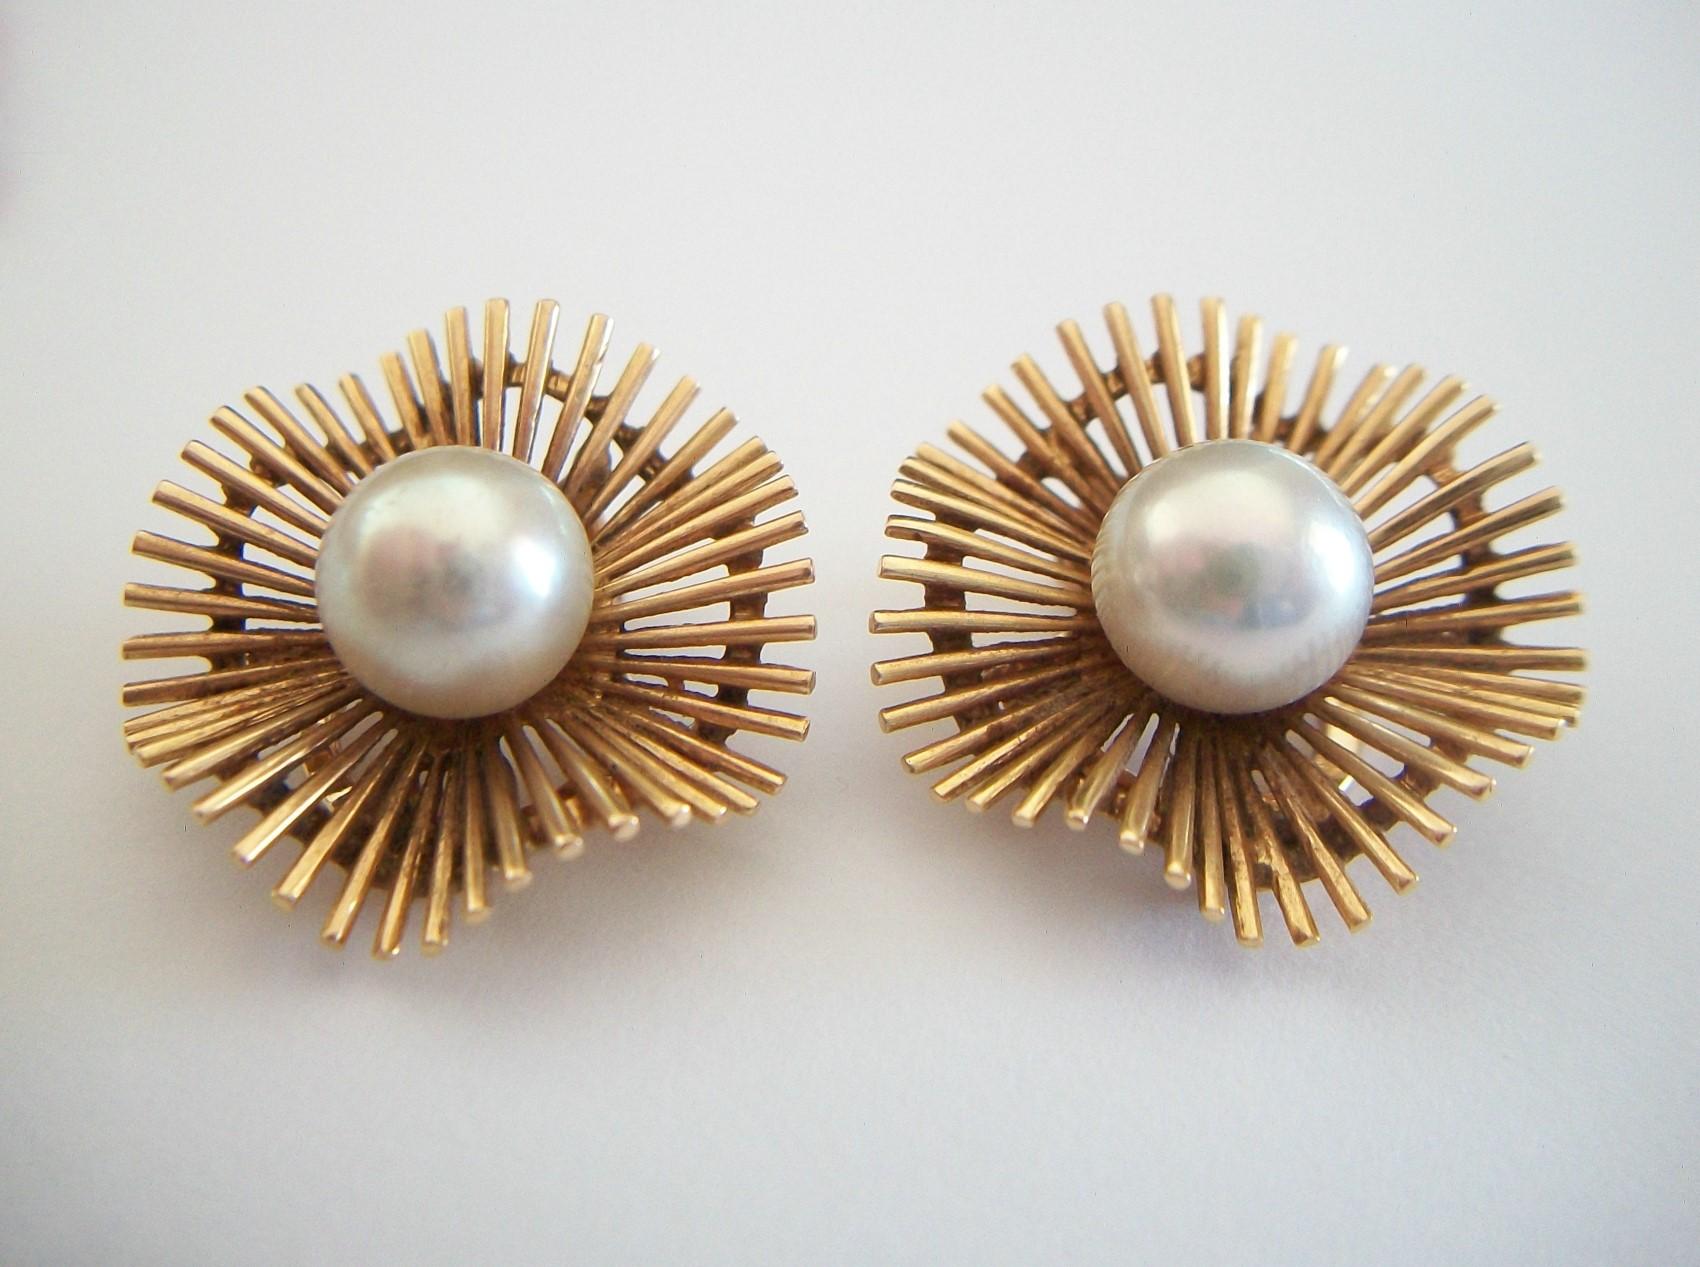 Clips d'oreille modernistes en perles de culture et or jaune 18 carats - raffinés et élégants - fine qualité artisanale - chaque clip d'oreille présente une perle de culture (environ 8 mm. de diamètre) au centre, entourée de barres d'or ondulantes